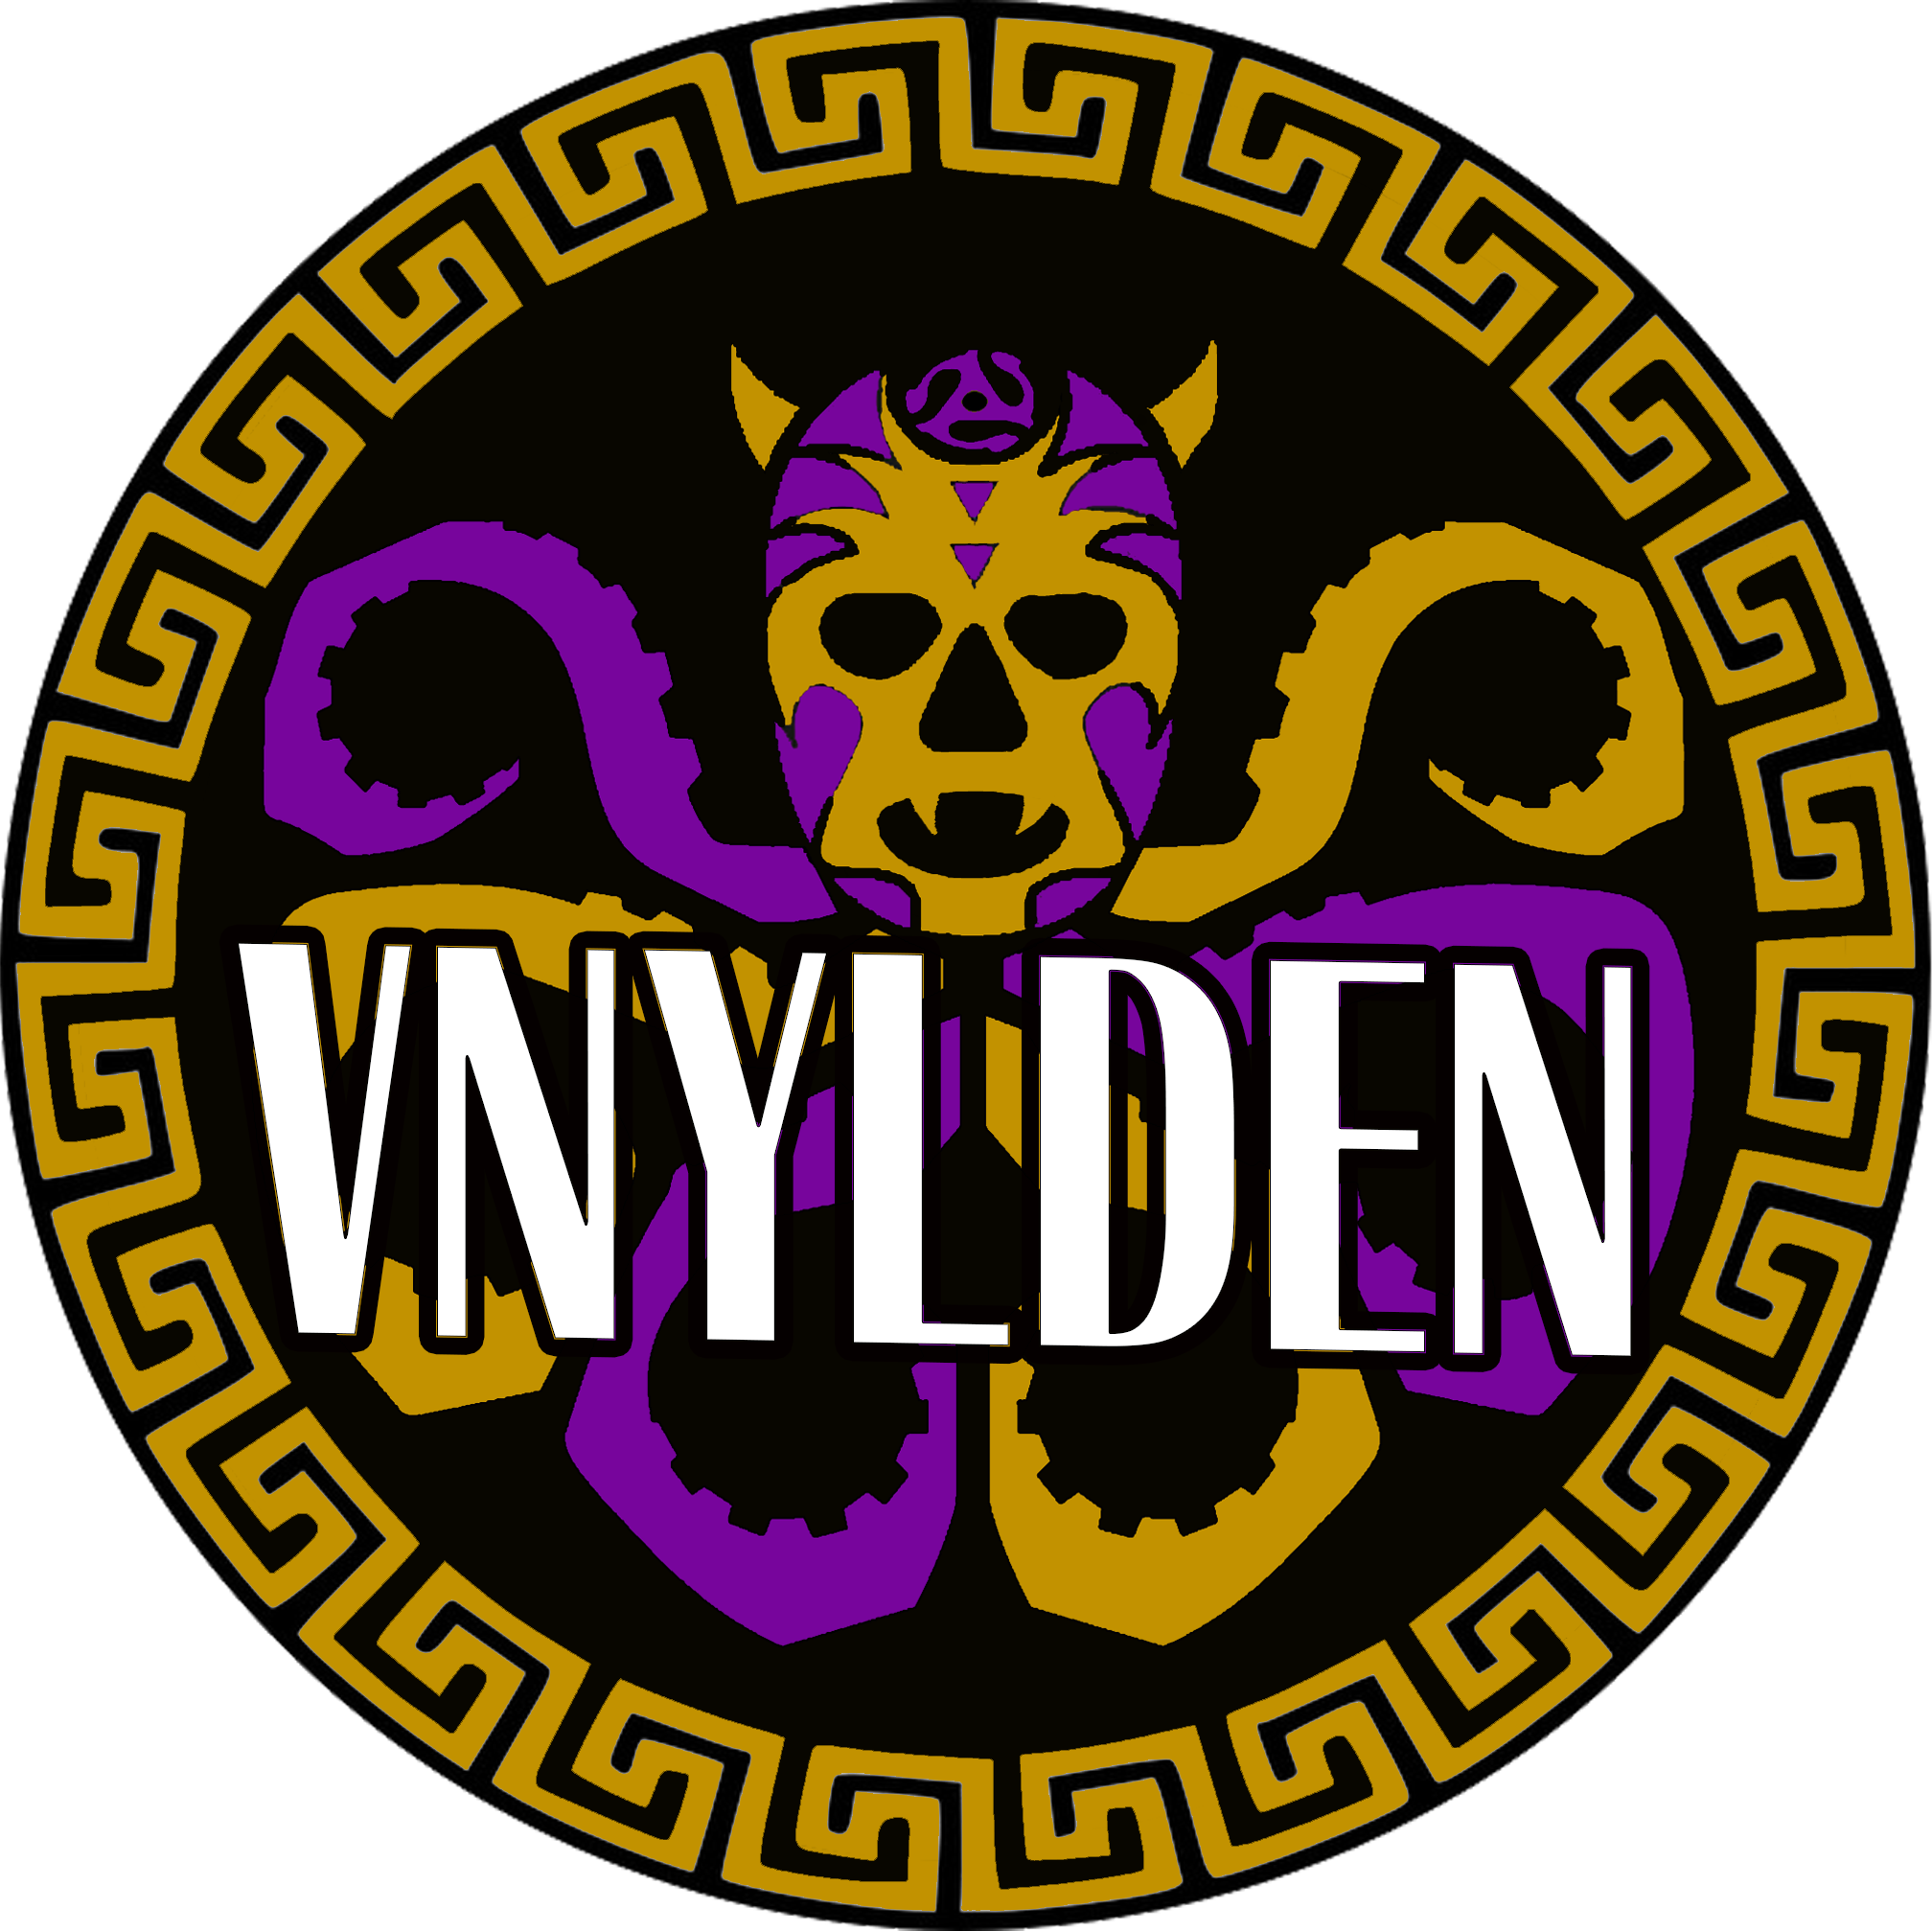 logo for http://www.vnylden.com/